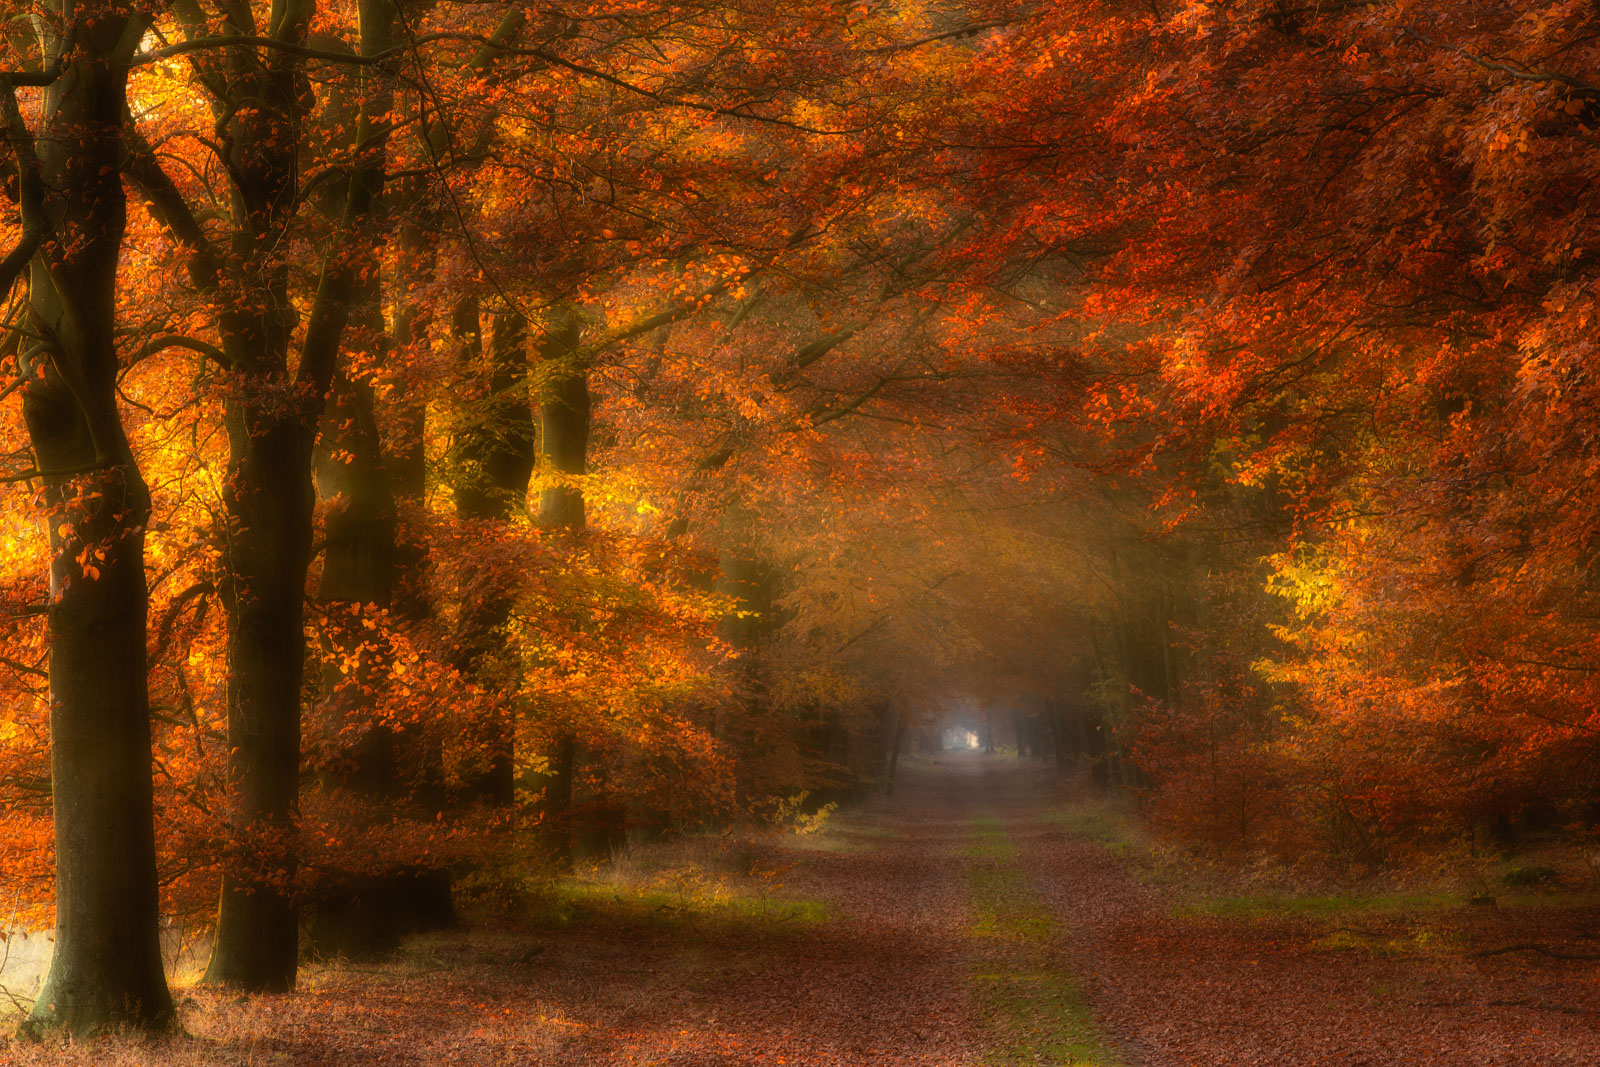 Herfst in het bos bij Gasselte met warm licht dat door de beukenlaan valt en voor mooie herfstkleuren zorgt